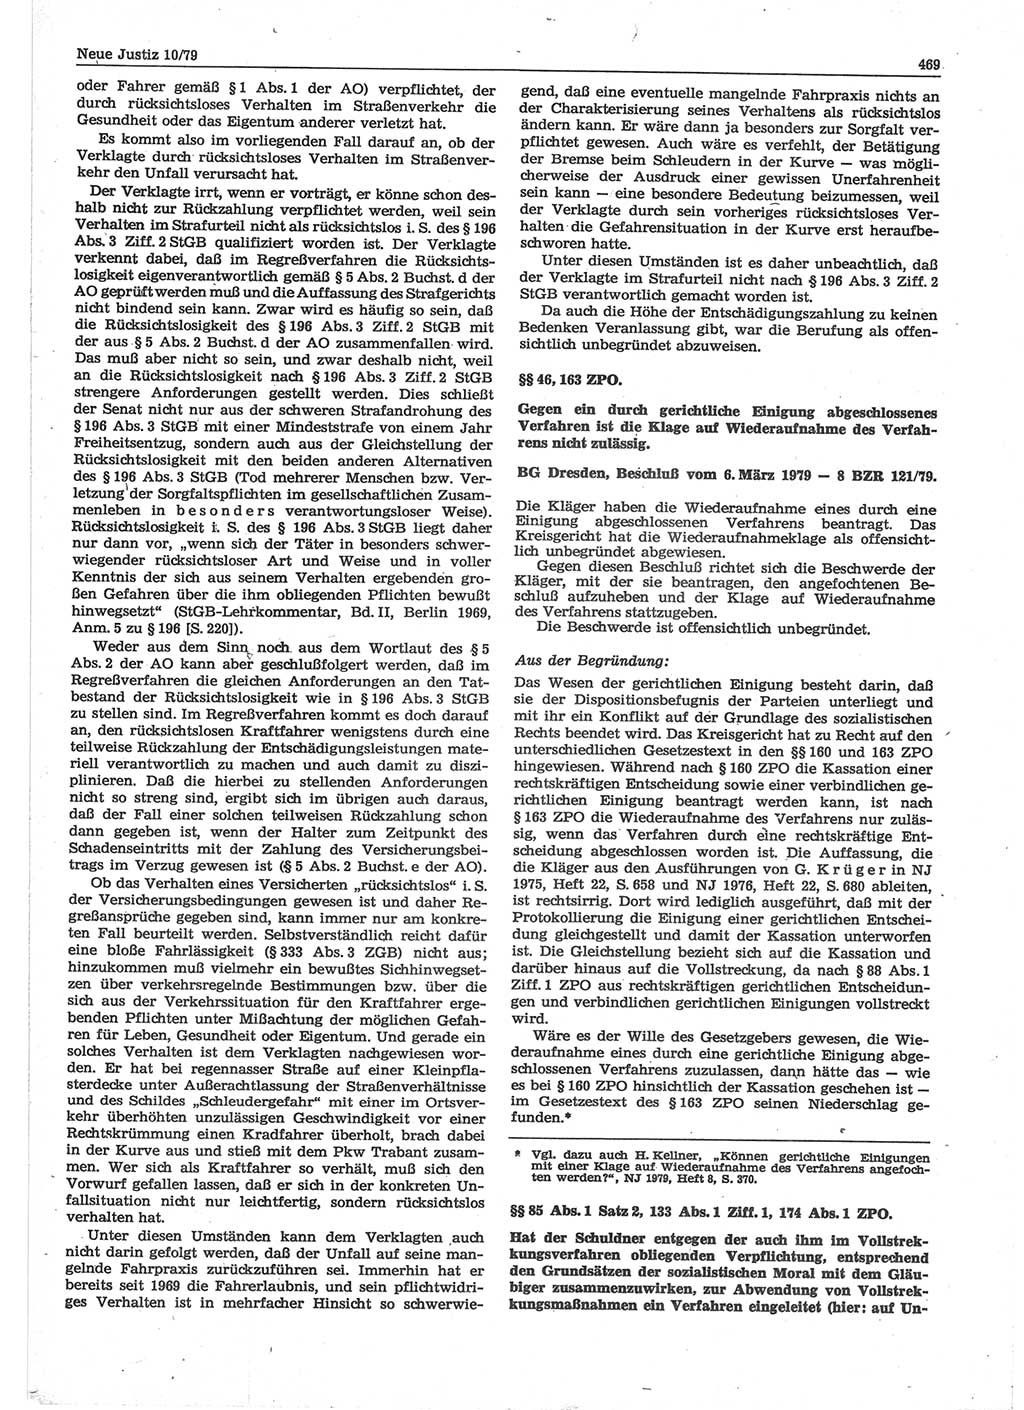 Neue Justiz (NJ), Zeitschrift für sozialistisches Recht und Gesetzlichkeit [Deutsche Demokratische Republik (DDR)], 33. Jahrgang 1979, Seite 469 (NJ DDR 1979, S. 469)